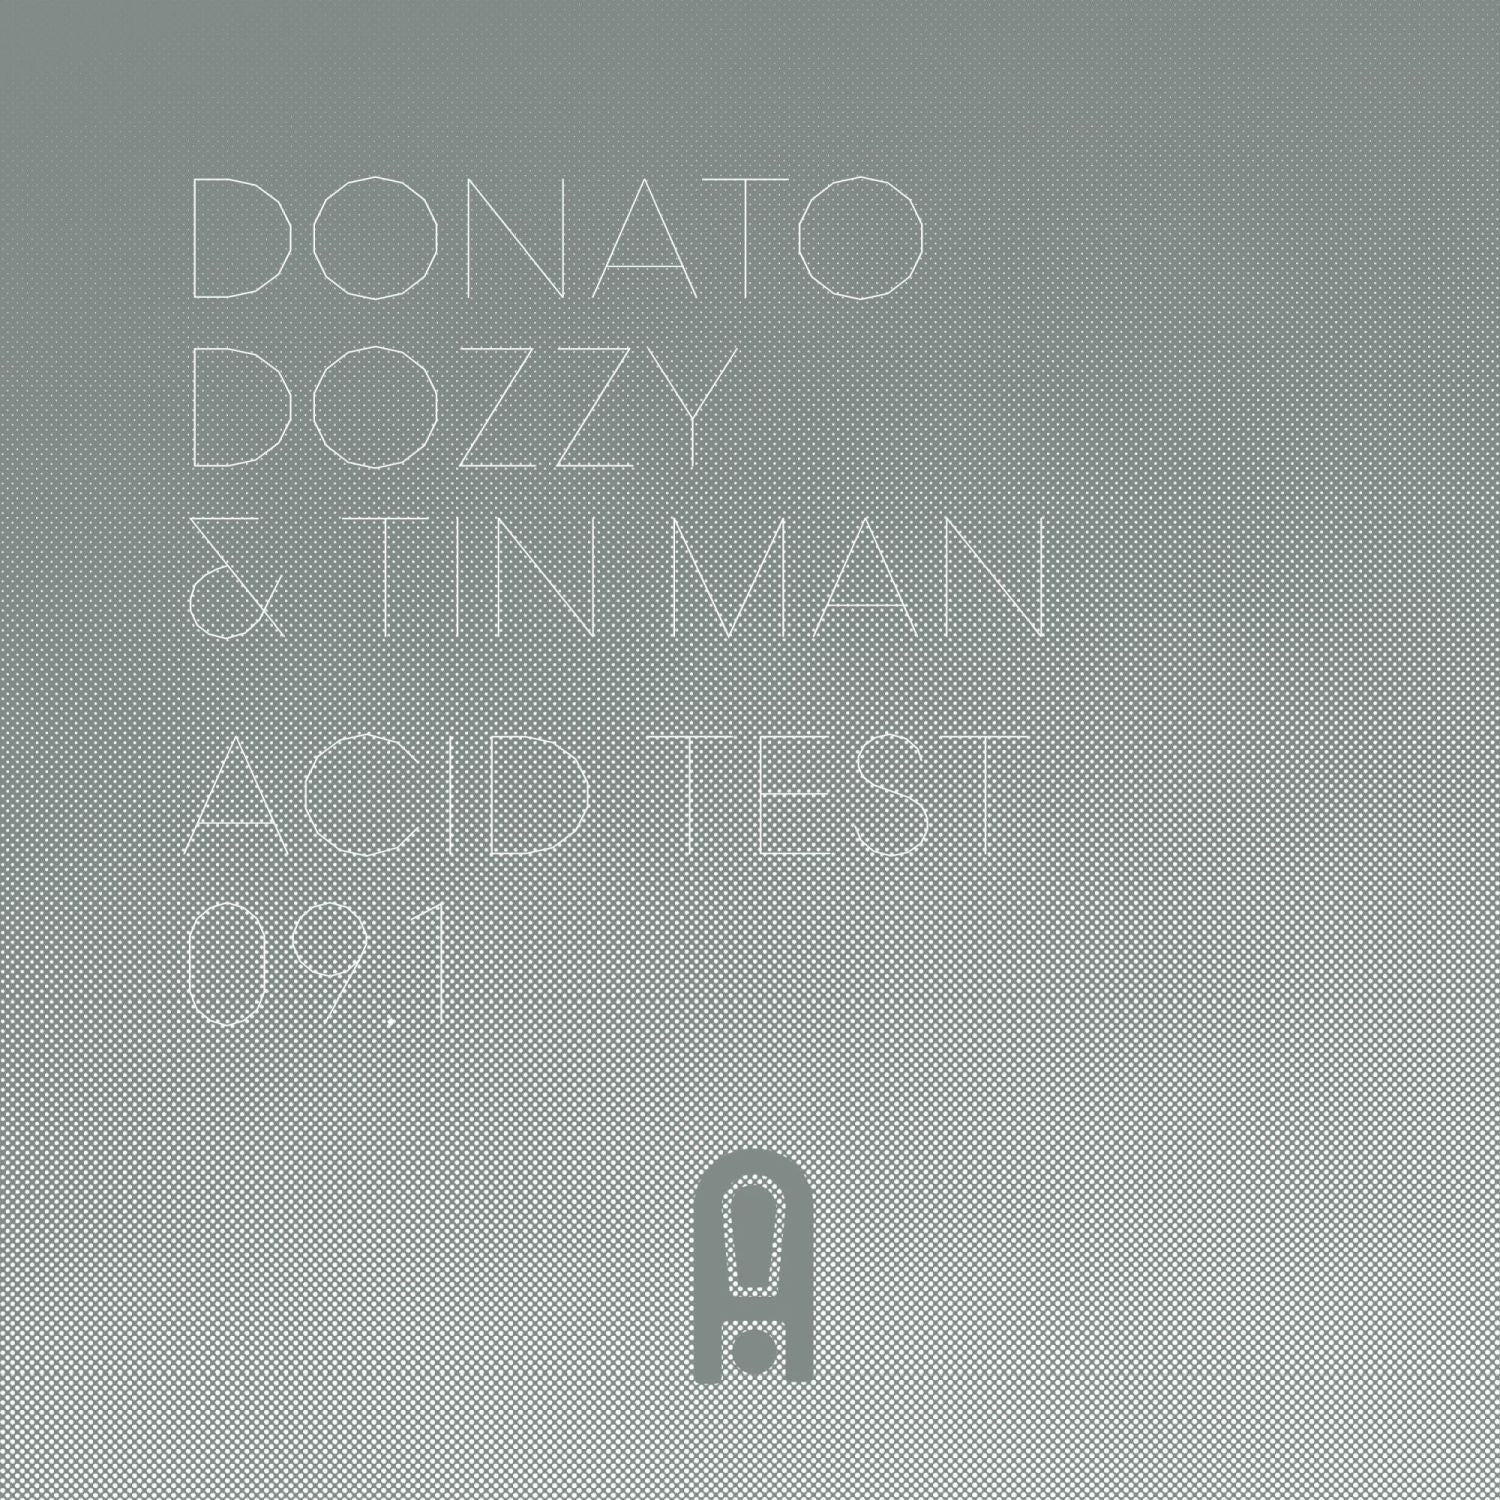 Donato Dozzy & Tin Man – Acid Test 09.1